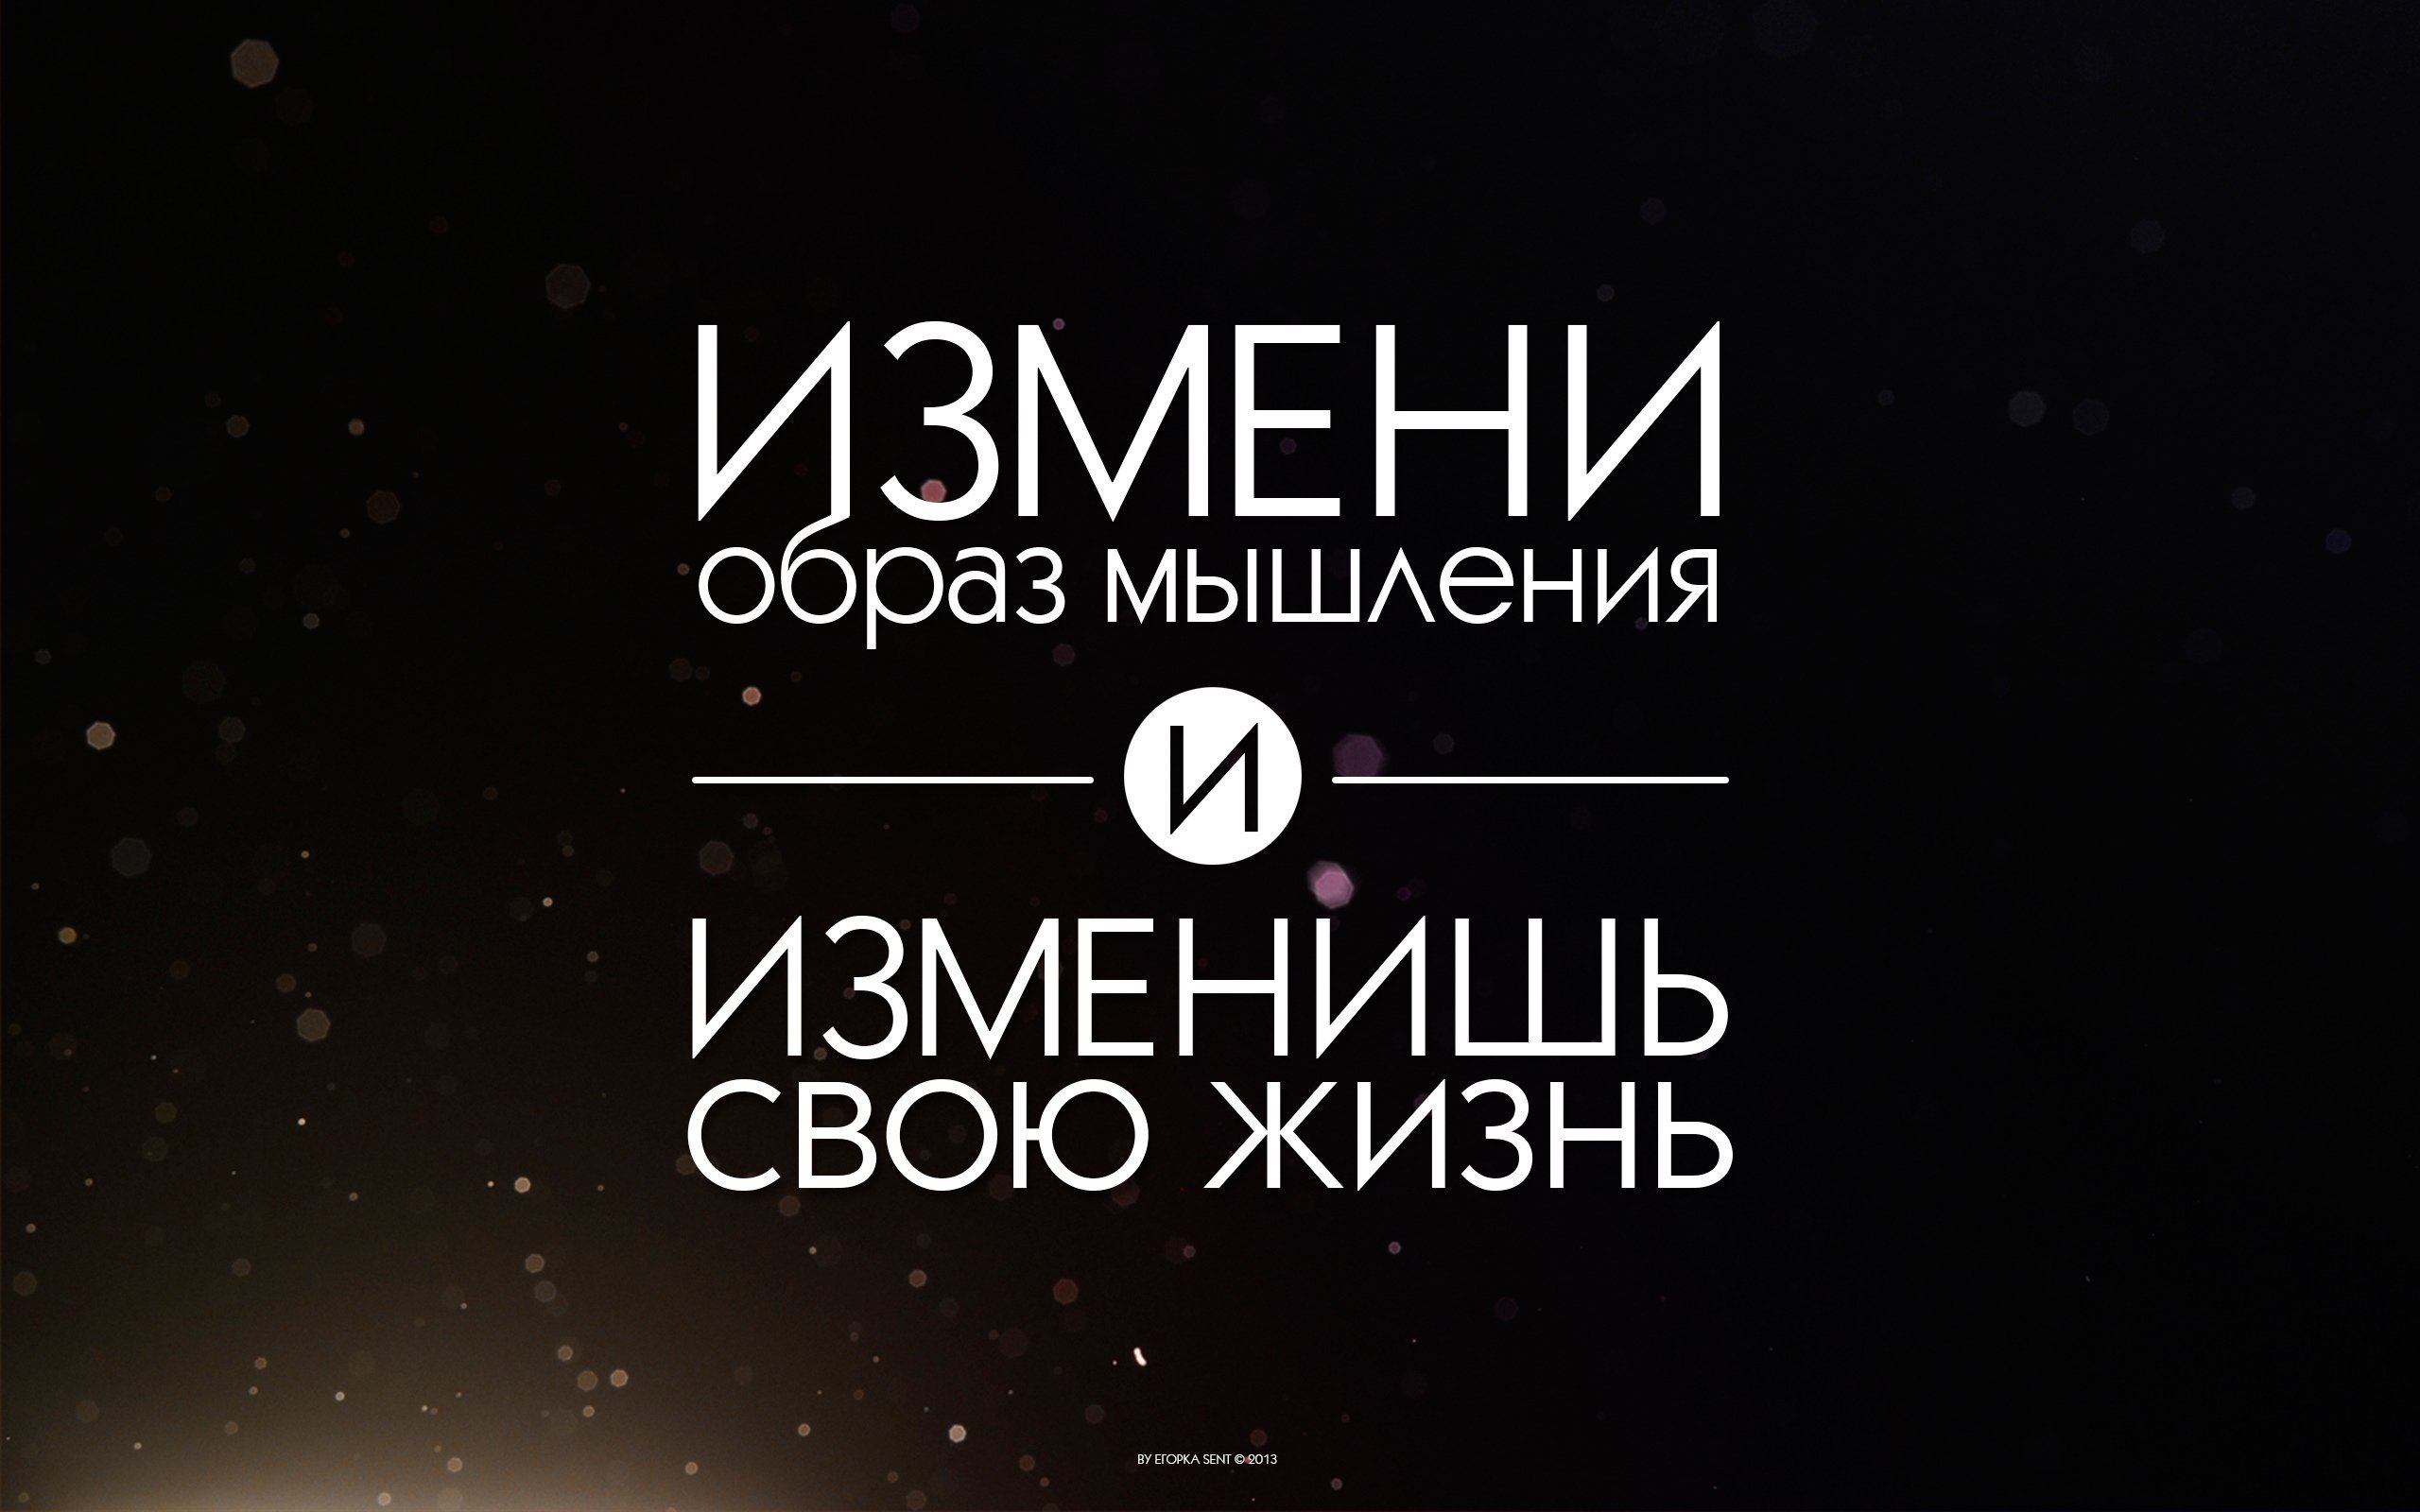 Обои с надписью со смыслом на русском языке фото